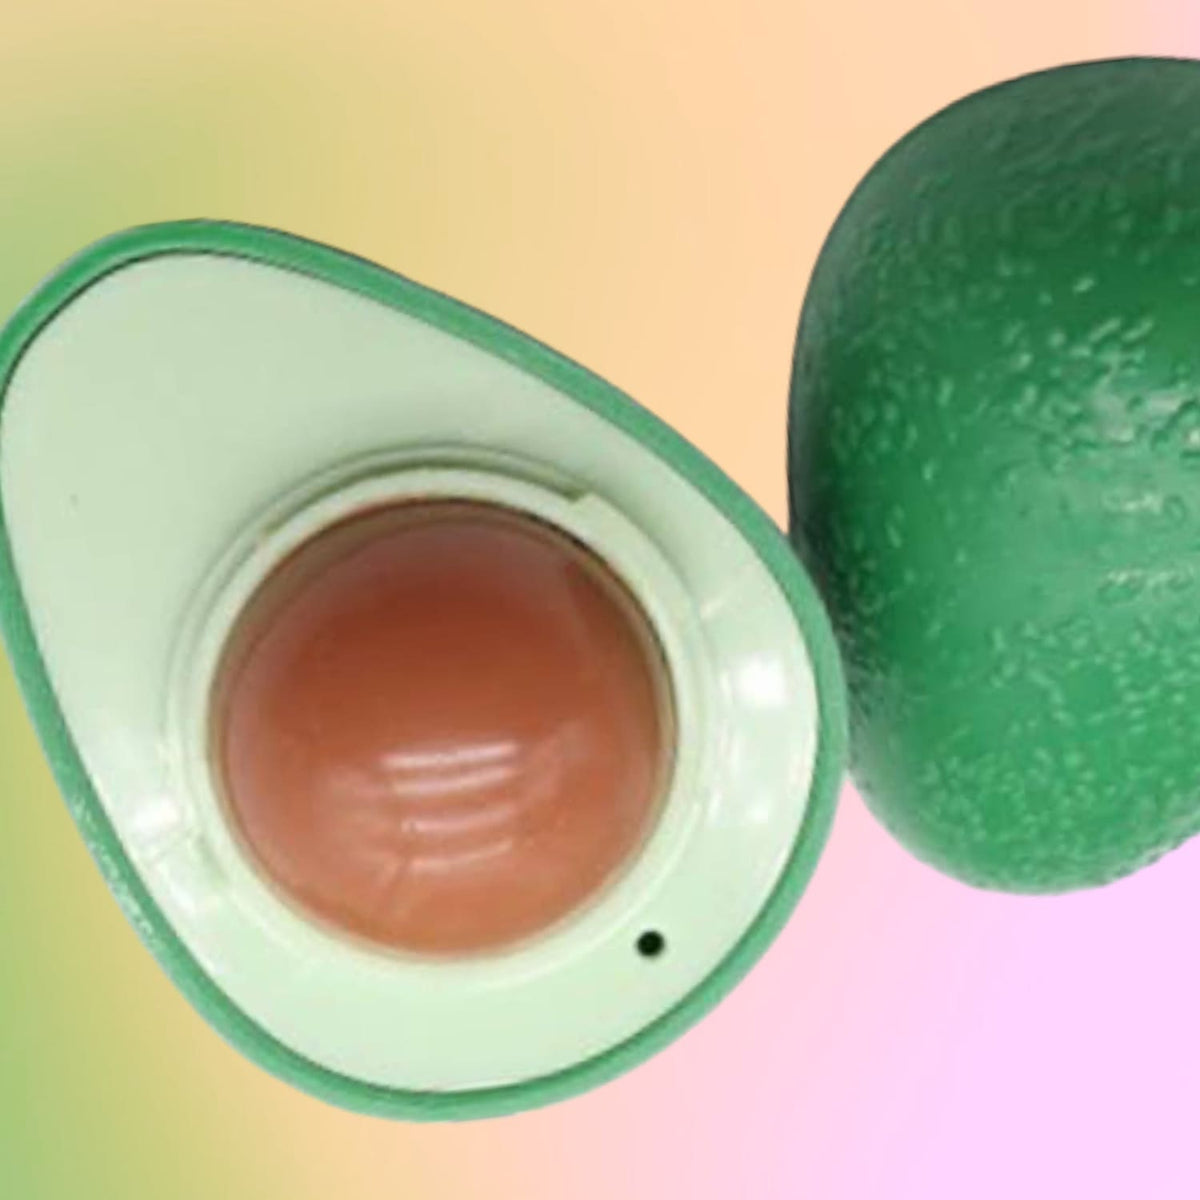 Avocado Lip Balm Avocado - Face Care - Fake Food - Gag Gift